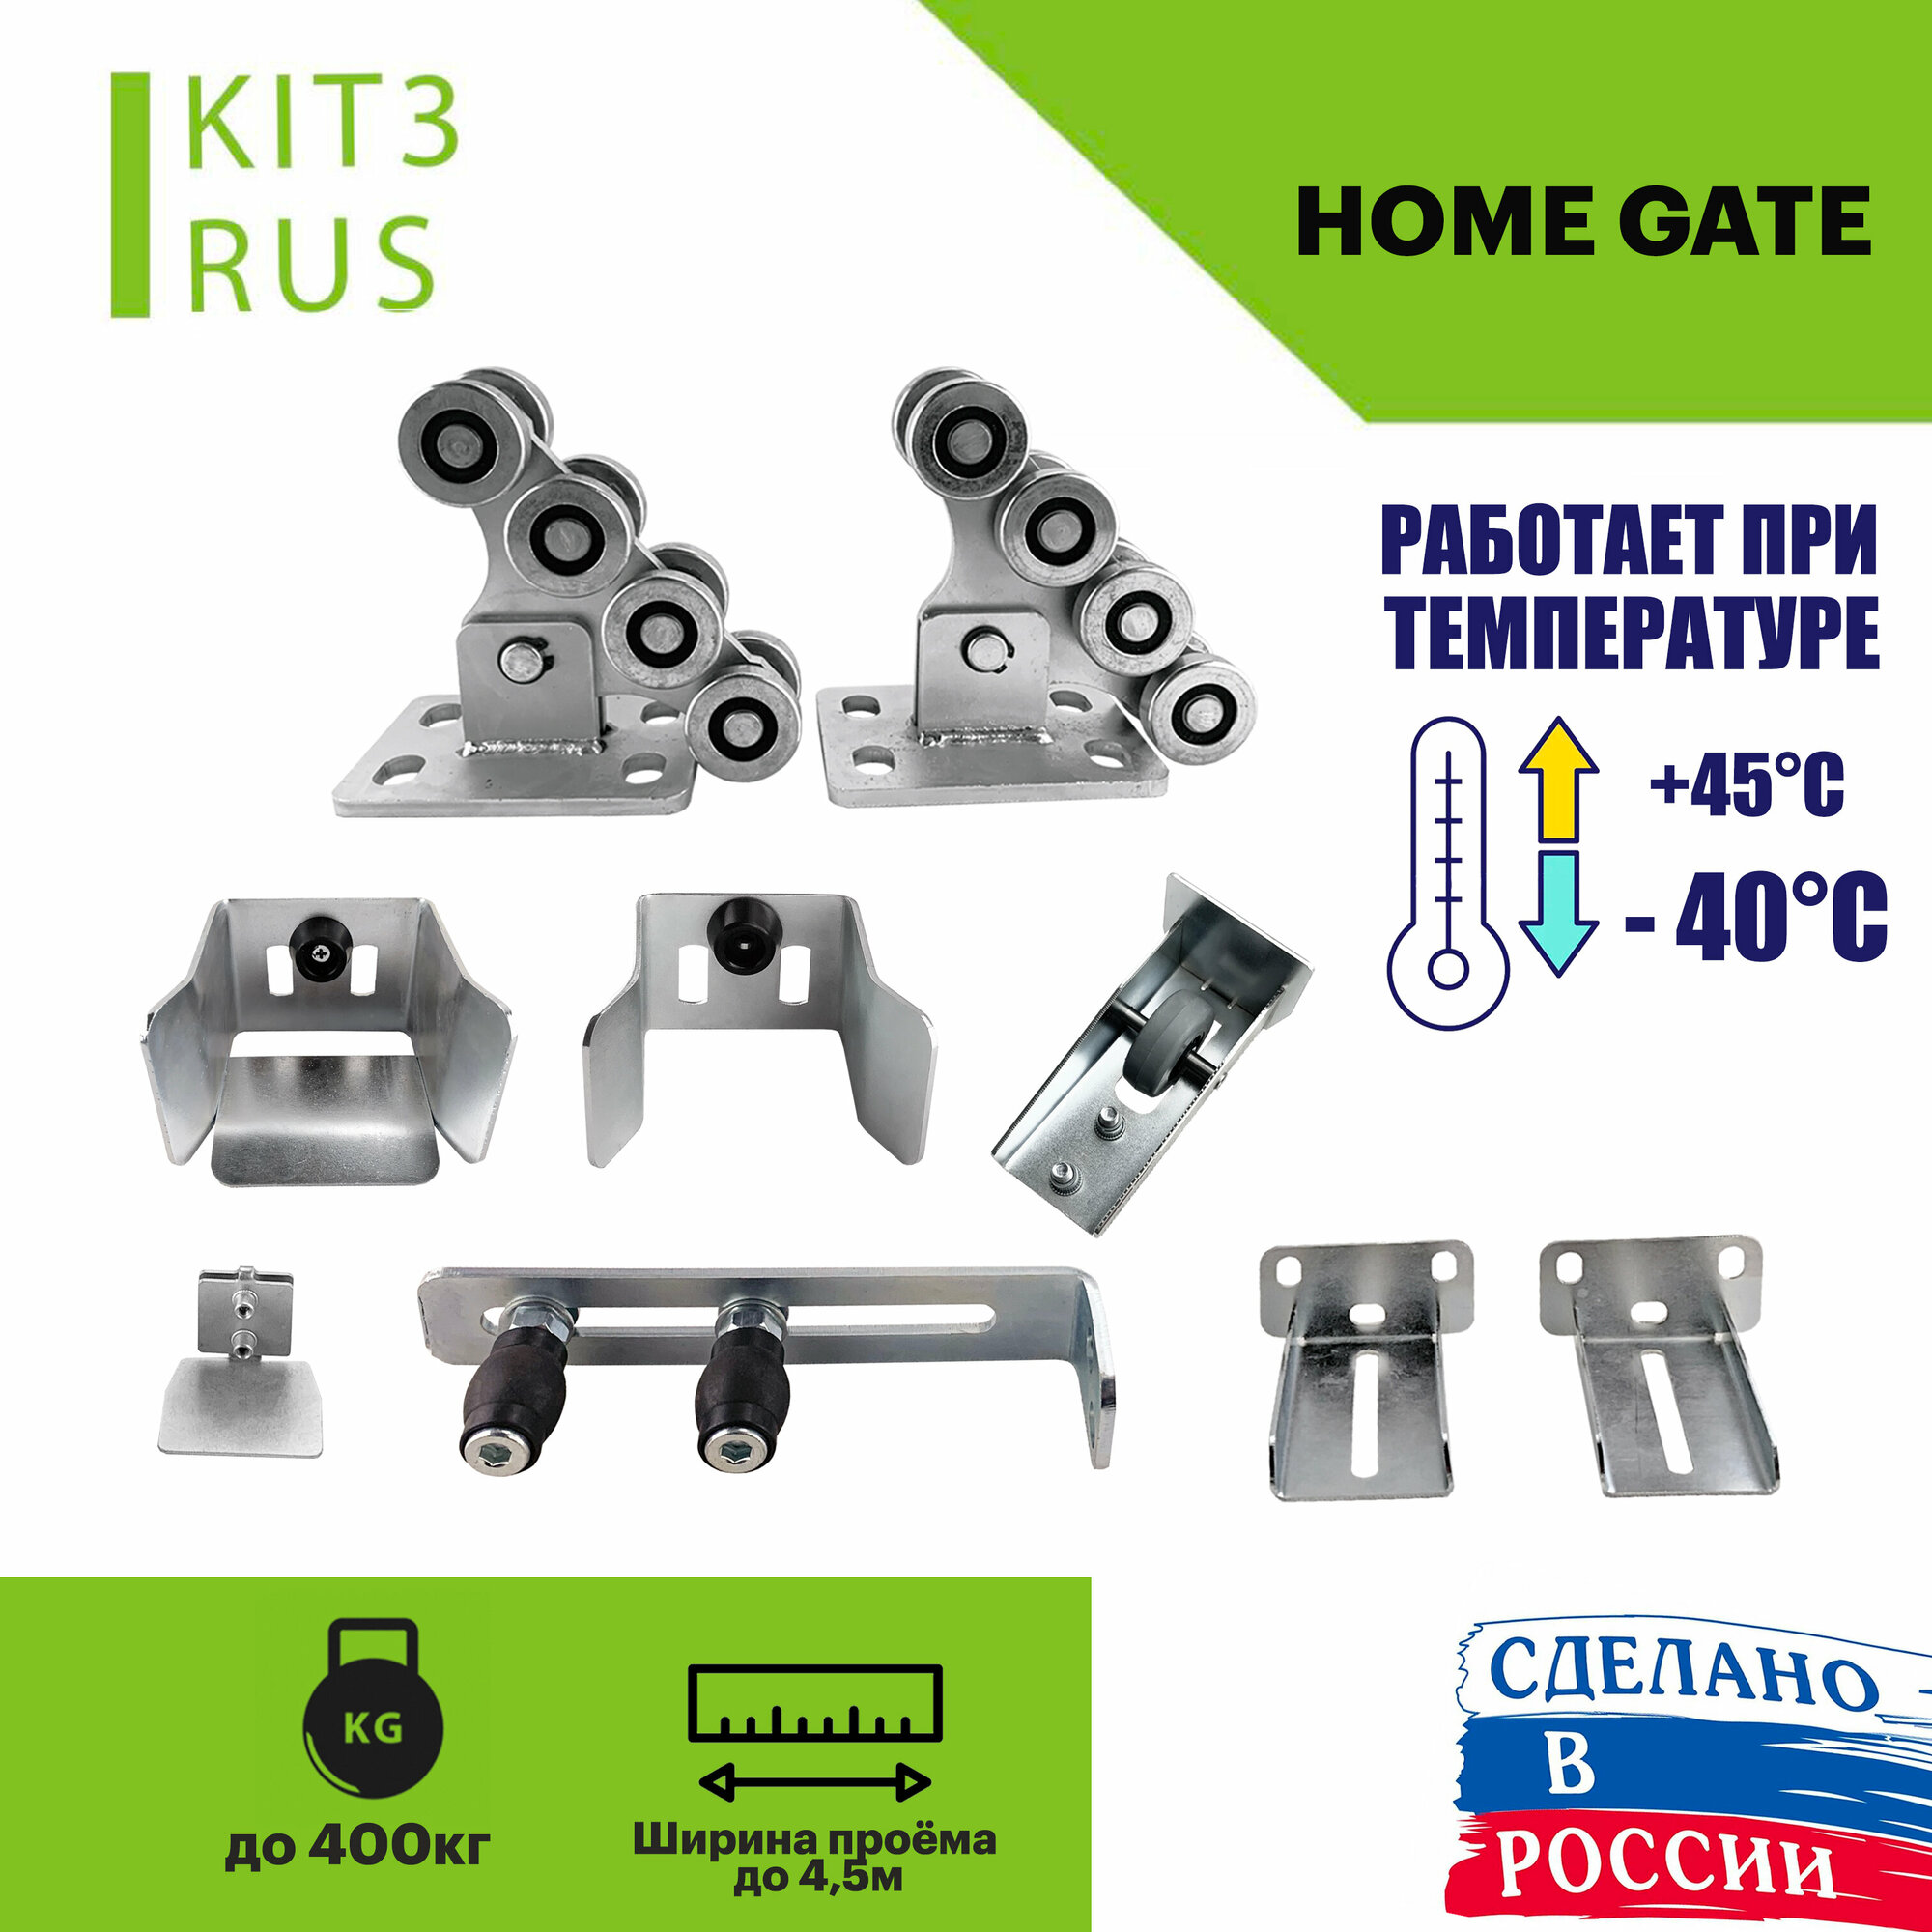 Комплект консольного оборудования для откатных ворот Home Gate KIT3kRUS. Фурнитура для откатных ворот.